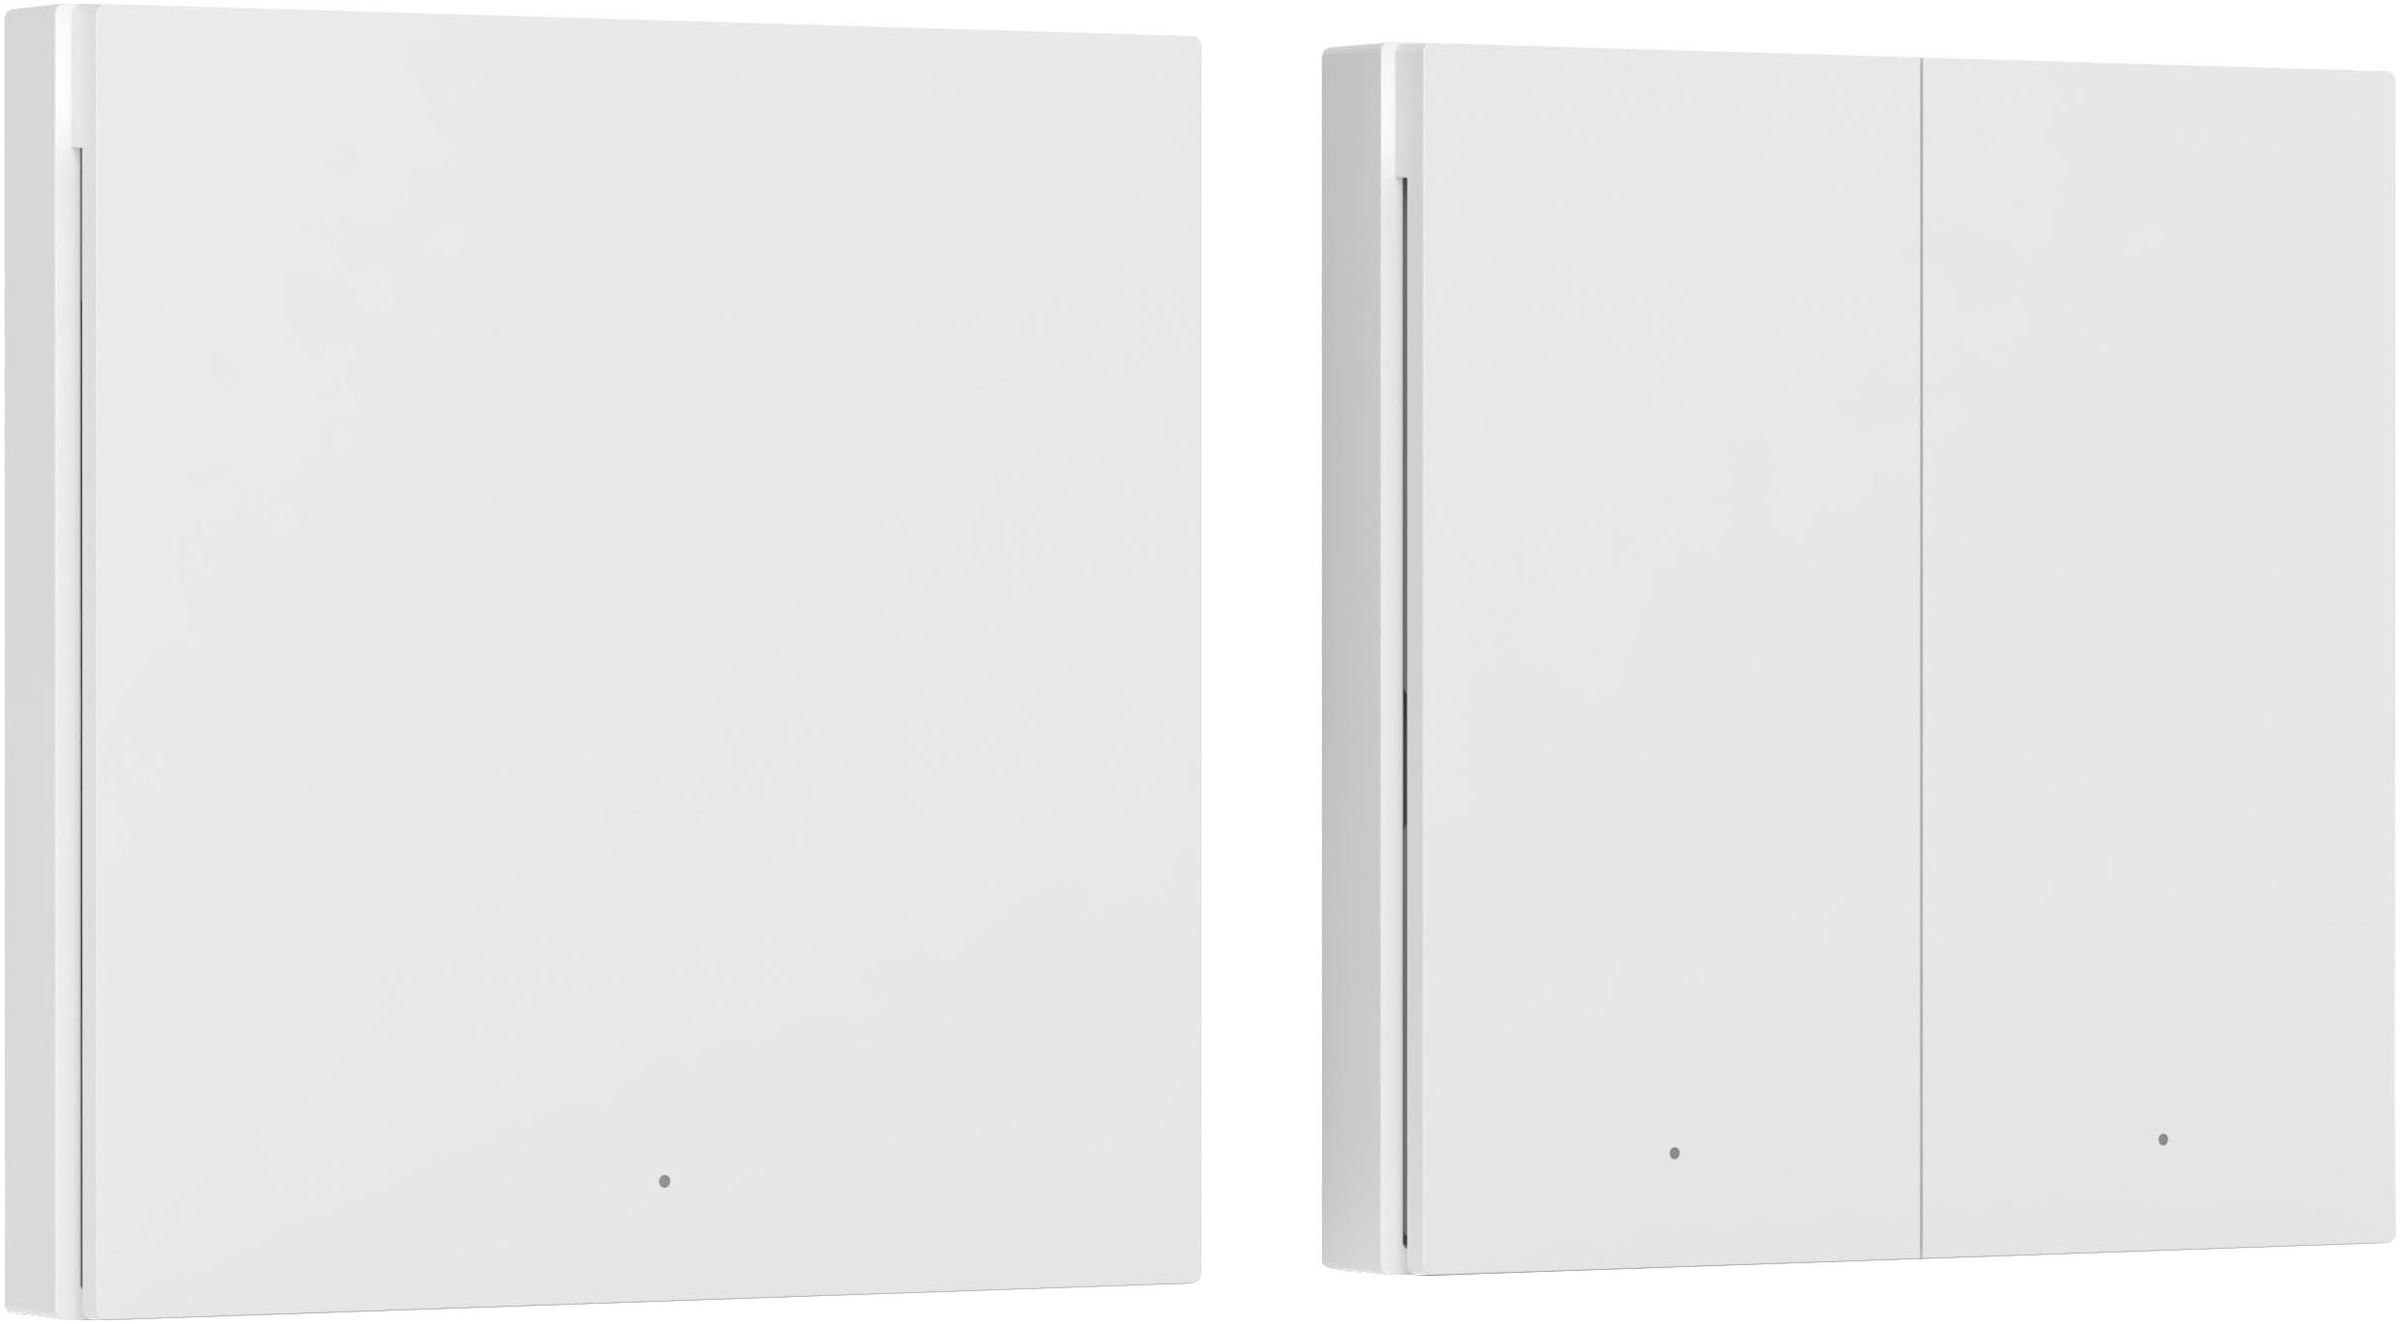 Aqara Lichtschalter »Smart Wall Switch H1 (With Neutral, Single Rocker)«